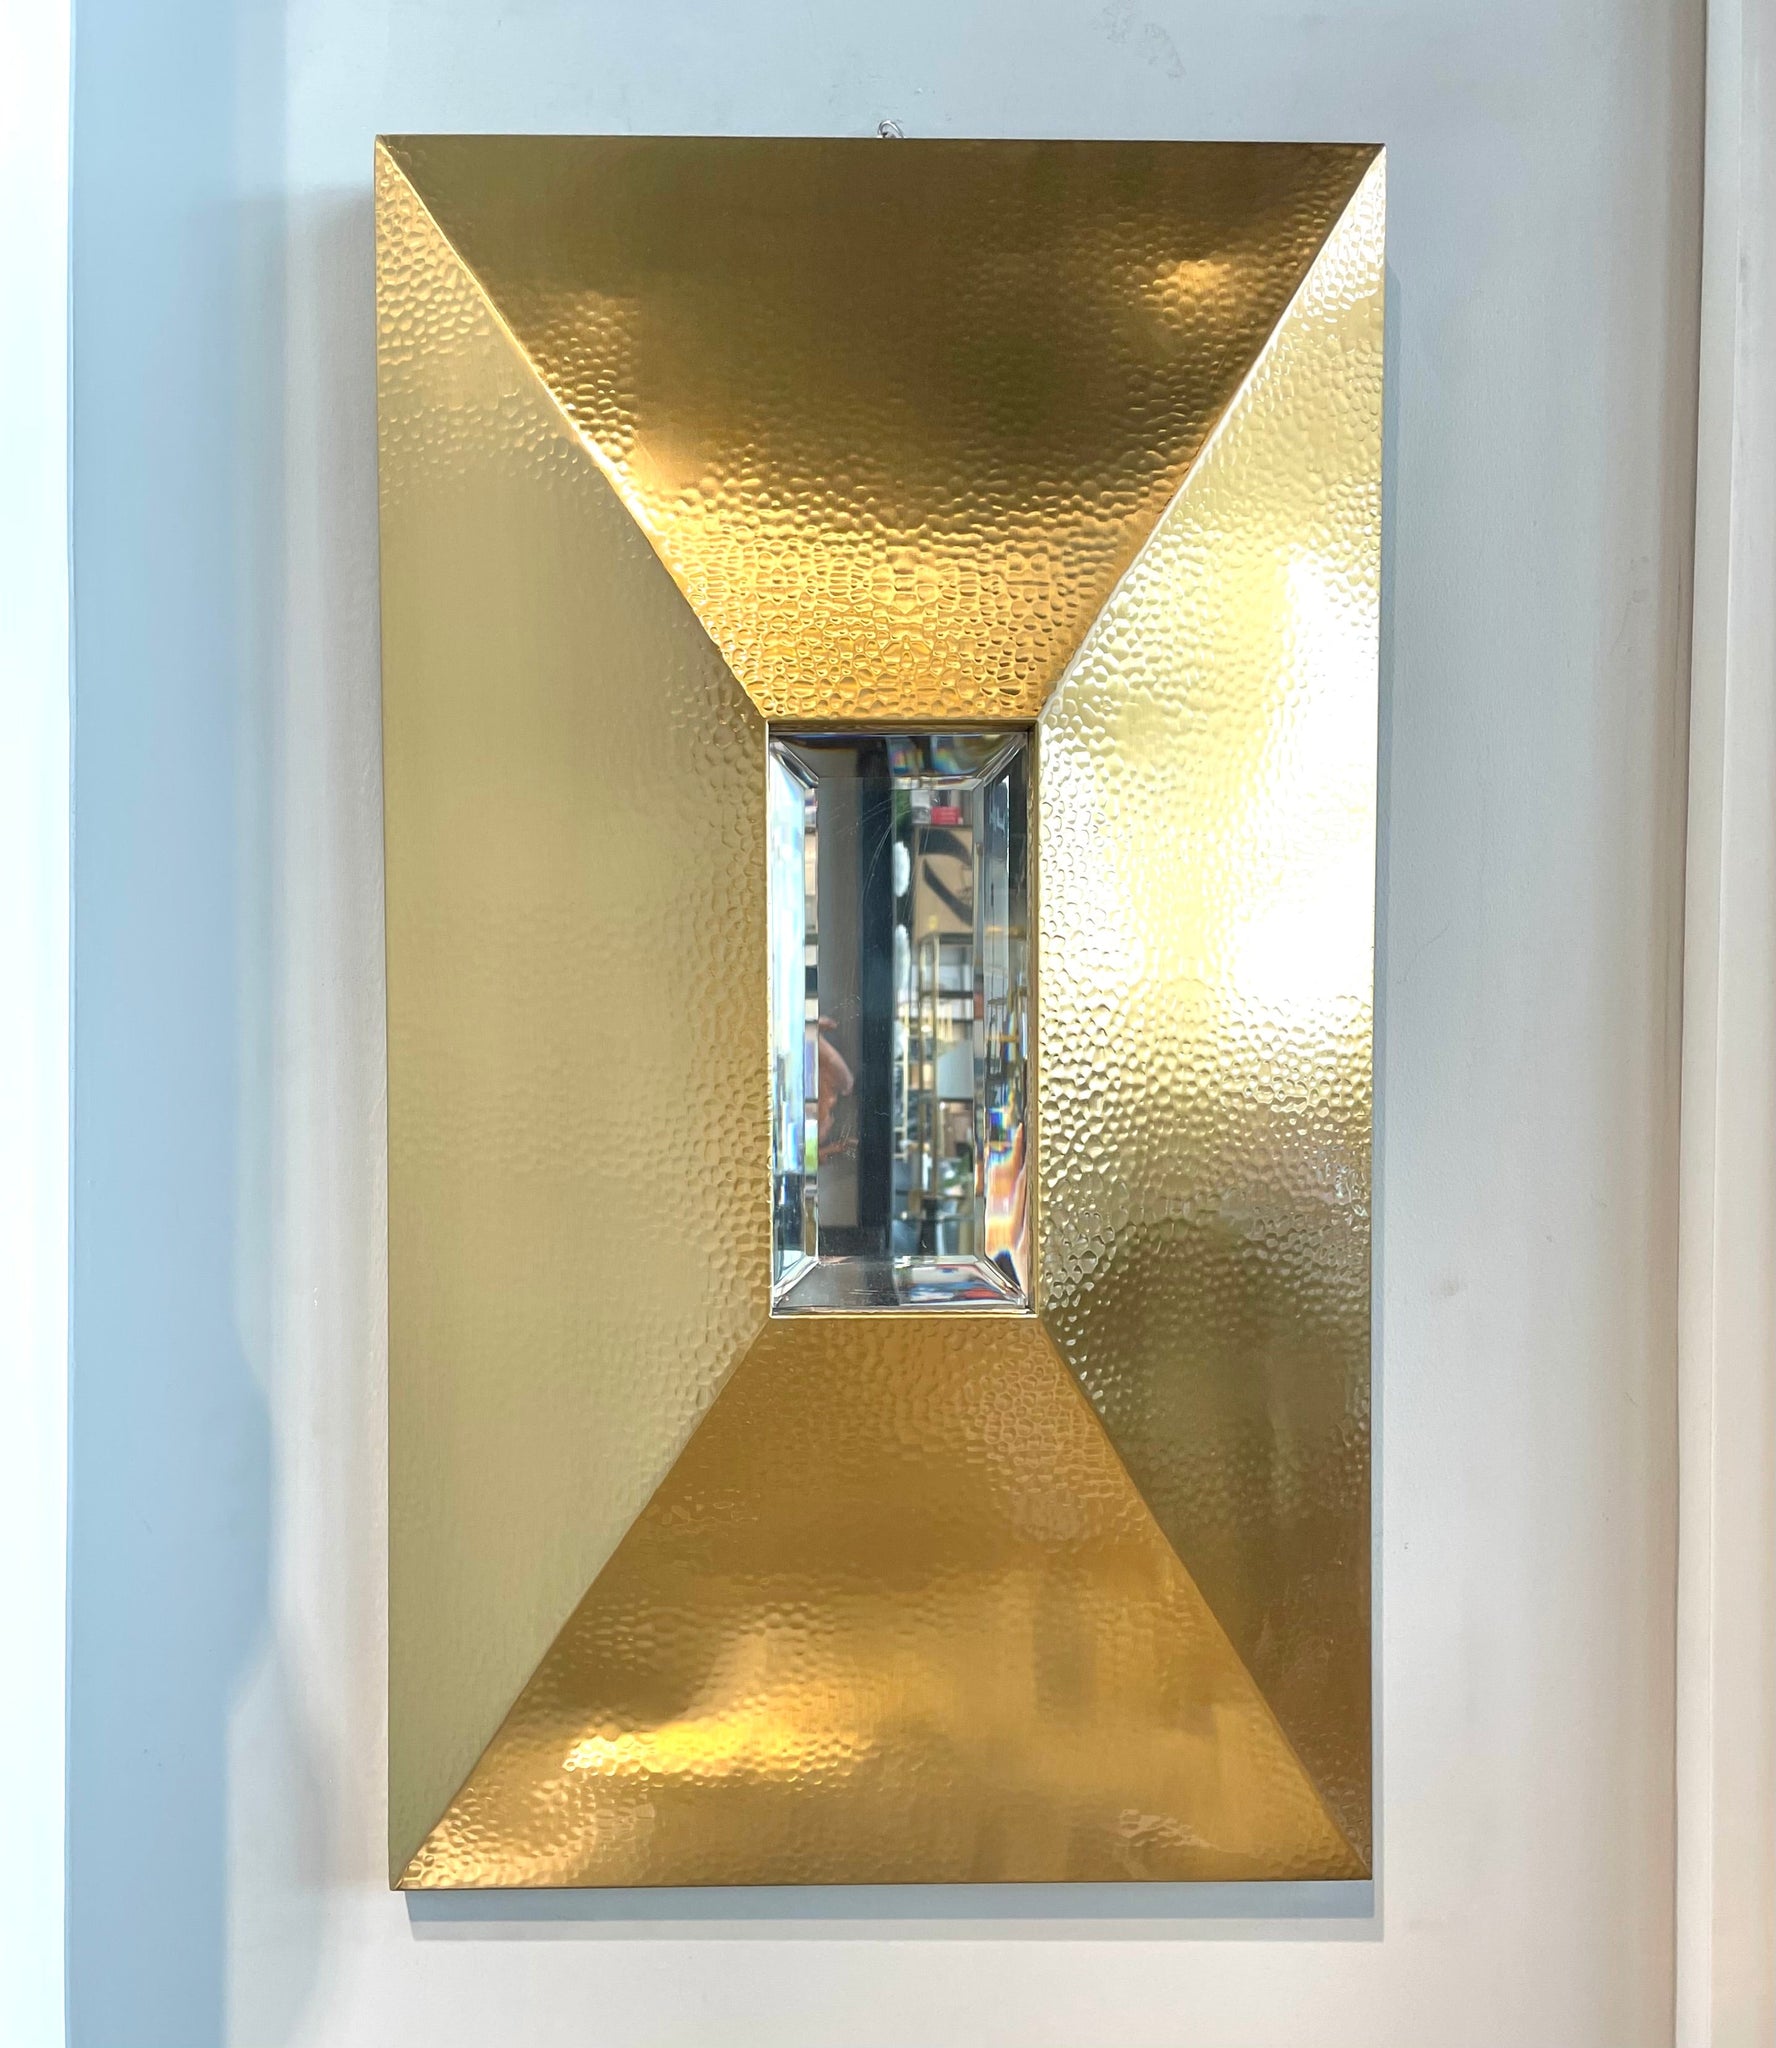 Mirrored Golden Wall Decor